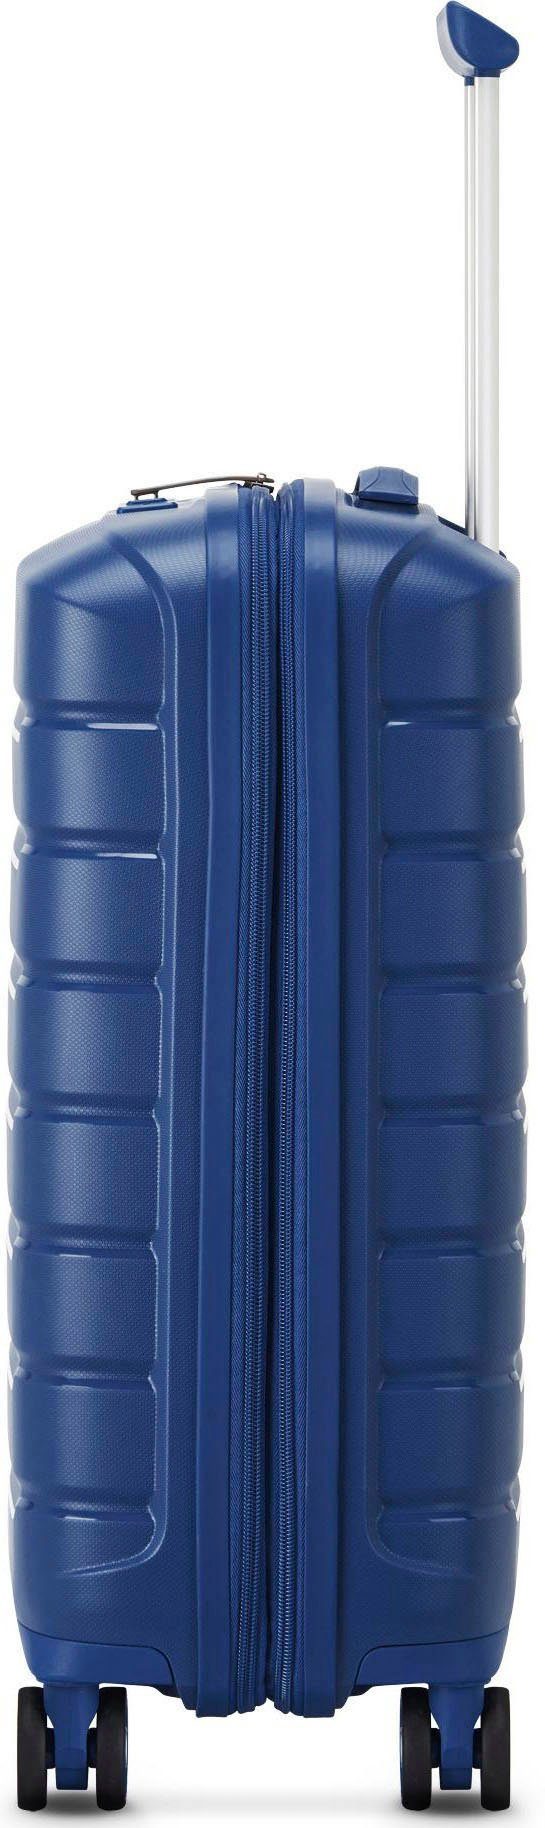 RONCATO Hartschalen-Trolley notte mit dunkelblau, B-FLYING 55 Rollen, 4 cm, Volumenerweiterung blu Carry-on